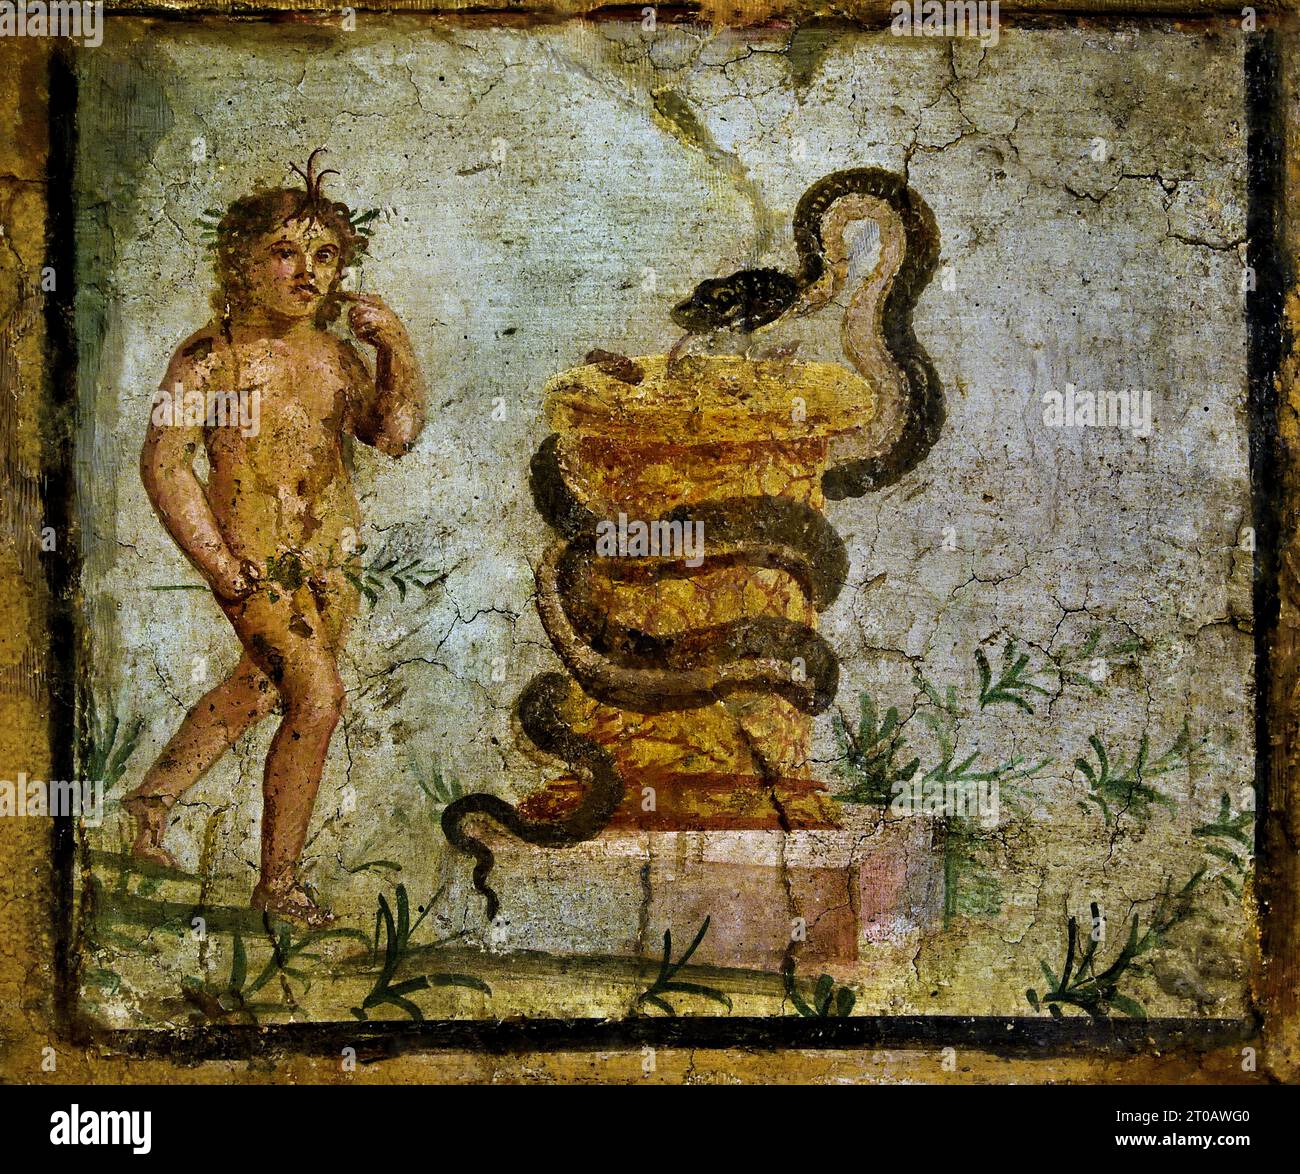 Harpocrate in piedi vicino a un altare, circondato da un serpente. Ercolano. La città romana di fresco Pompei si trova vicino a Napoli, nella regione Campania. Pompei fu sepolta sotto 4-6 m di cenere vulcanica e pomice nell'eruzione del Vesuvio nel 79 d.C. Italia Foto Stock